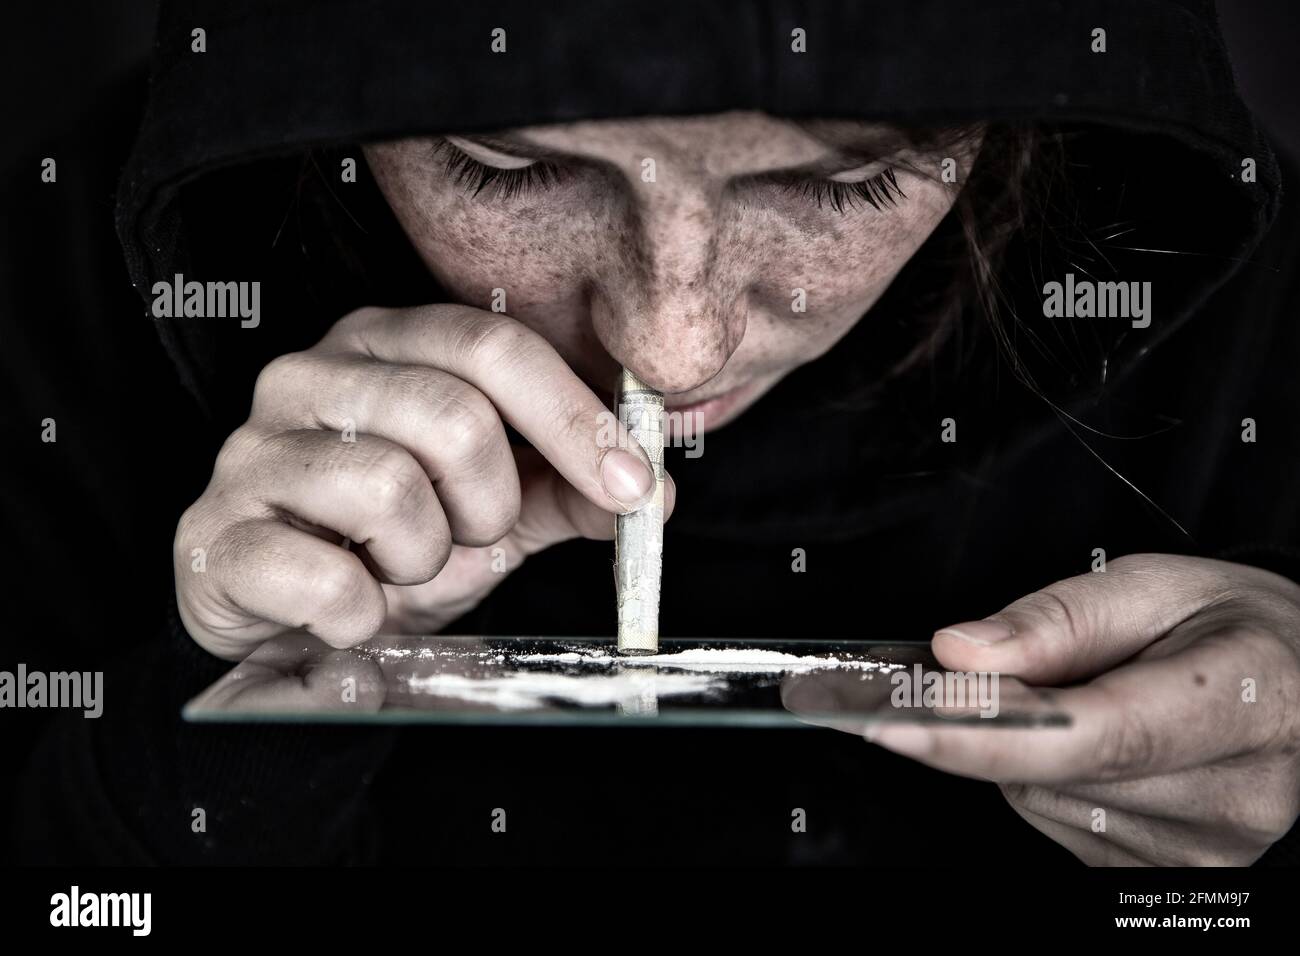 Drogue Addict renifler et ronfler la cocaïne, vitesse, héroïne ou autre drogue avec l'argent roulé sur le miroir avec fond sombre, toxicomanie, drogues, déprimé Banque D'Images